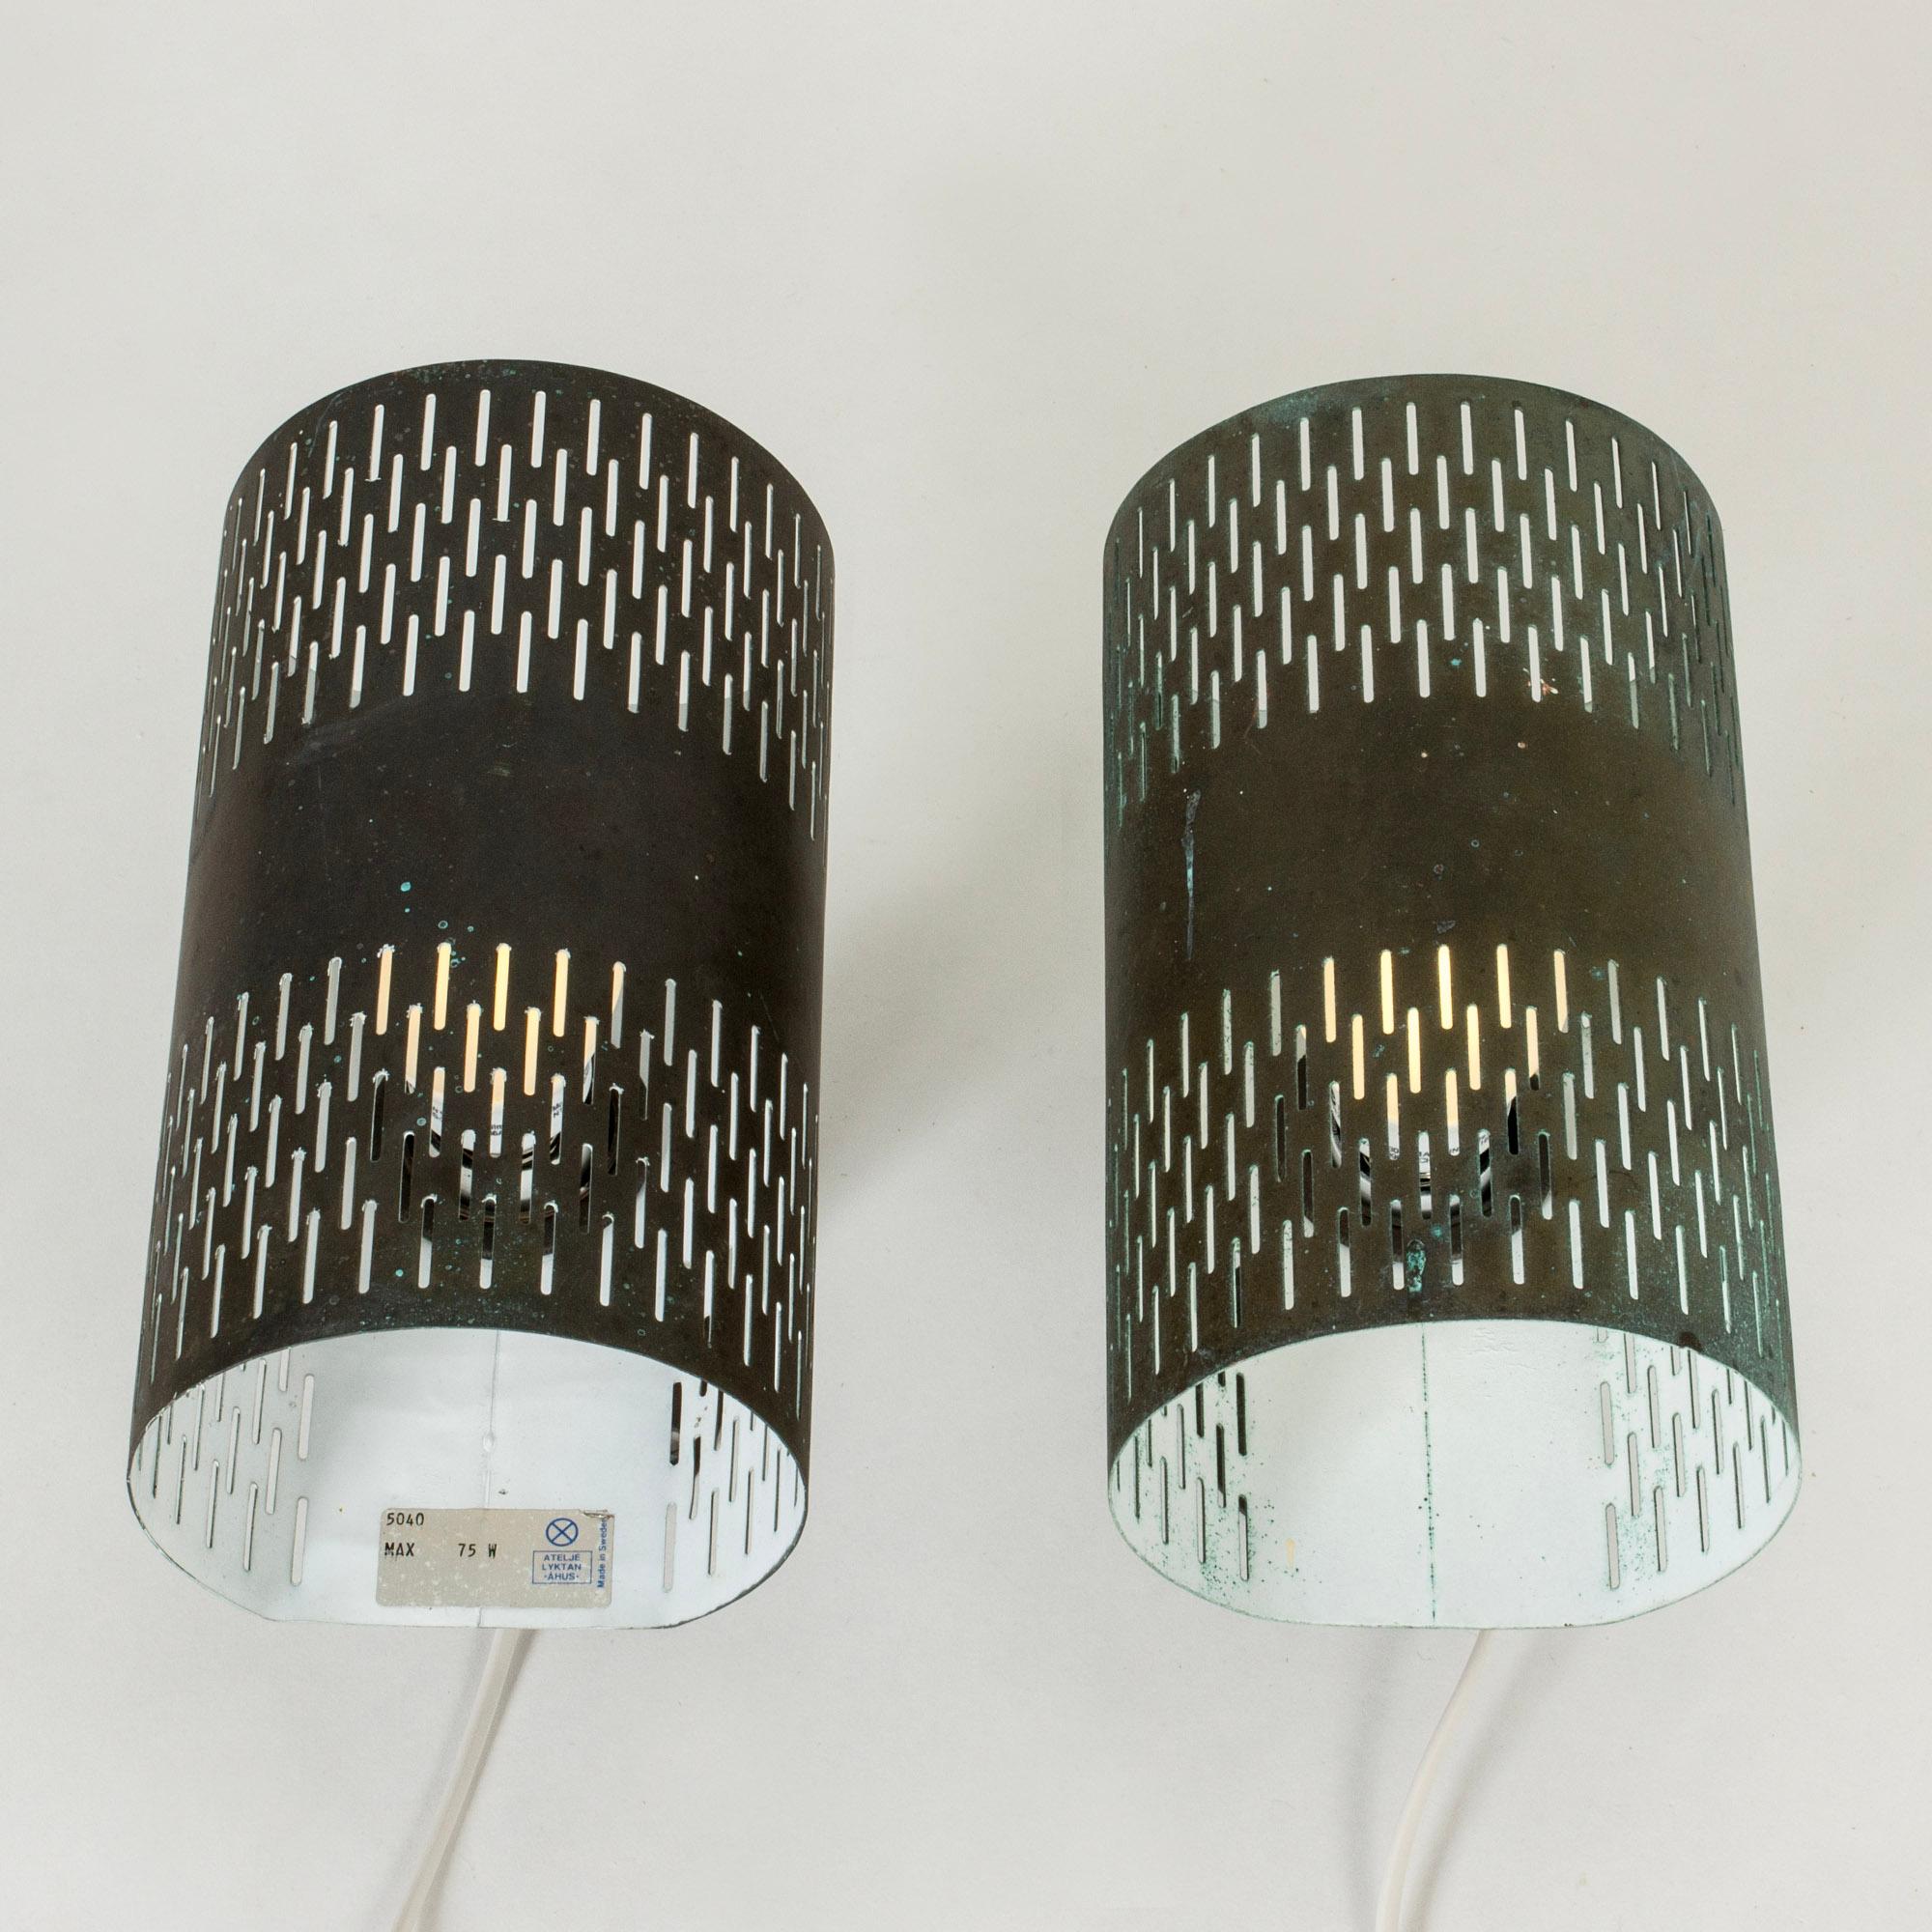 Sehr cooles Paar Wandleuchten von Hans Bergström, aus Kupfer gefertigt. Zylinderformen mit einem ausgeschnittenen grafischen Muster.

Neu verkabelt, muss aber von einem Elektriker installiert werden, wenn es im Freien montiert wird.

Hans Bergström